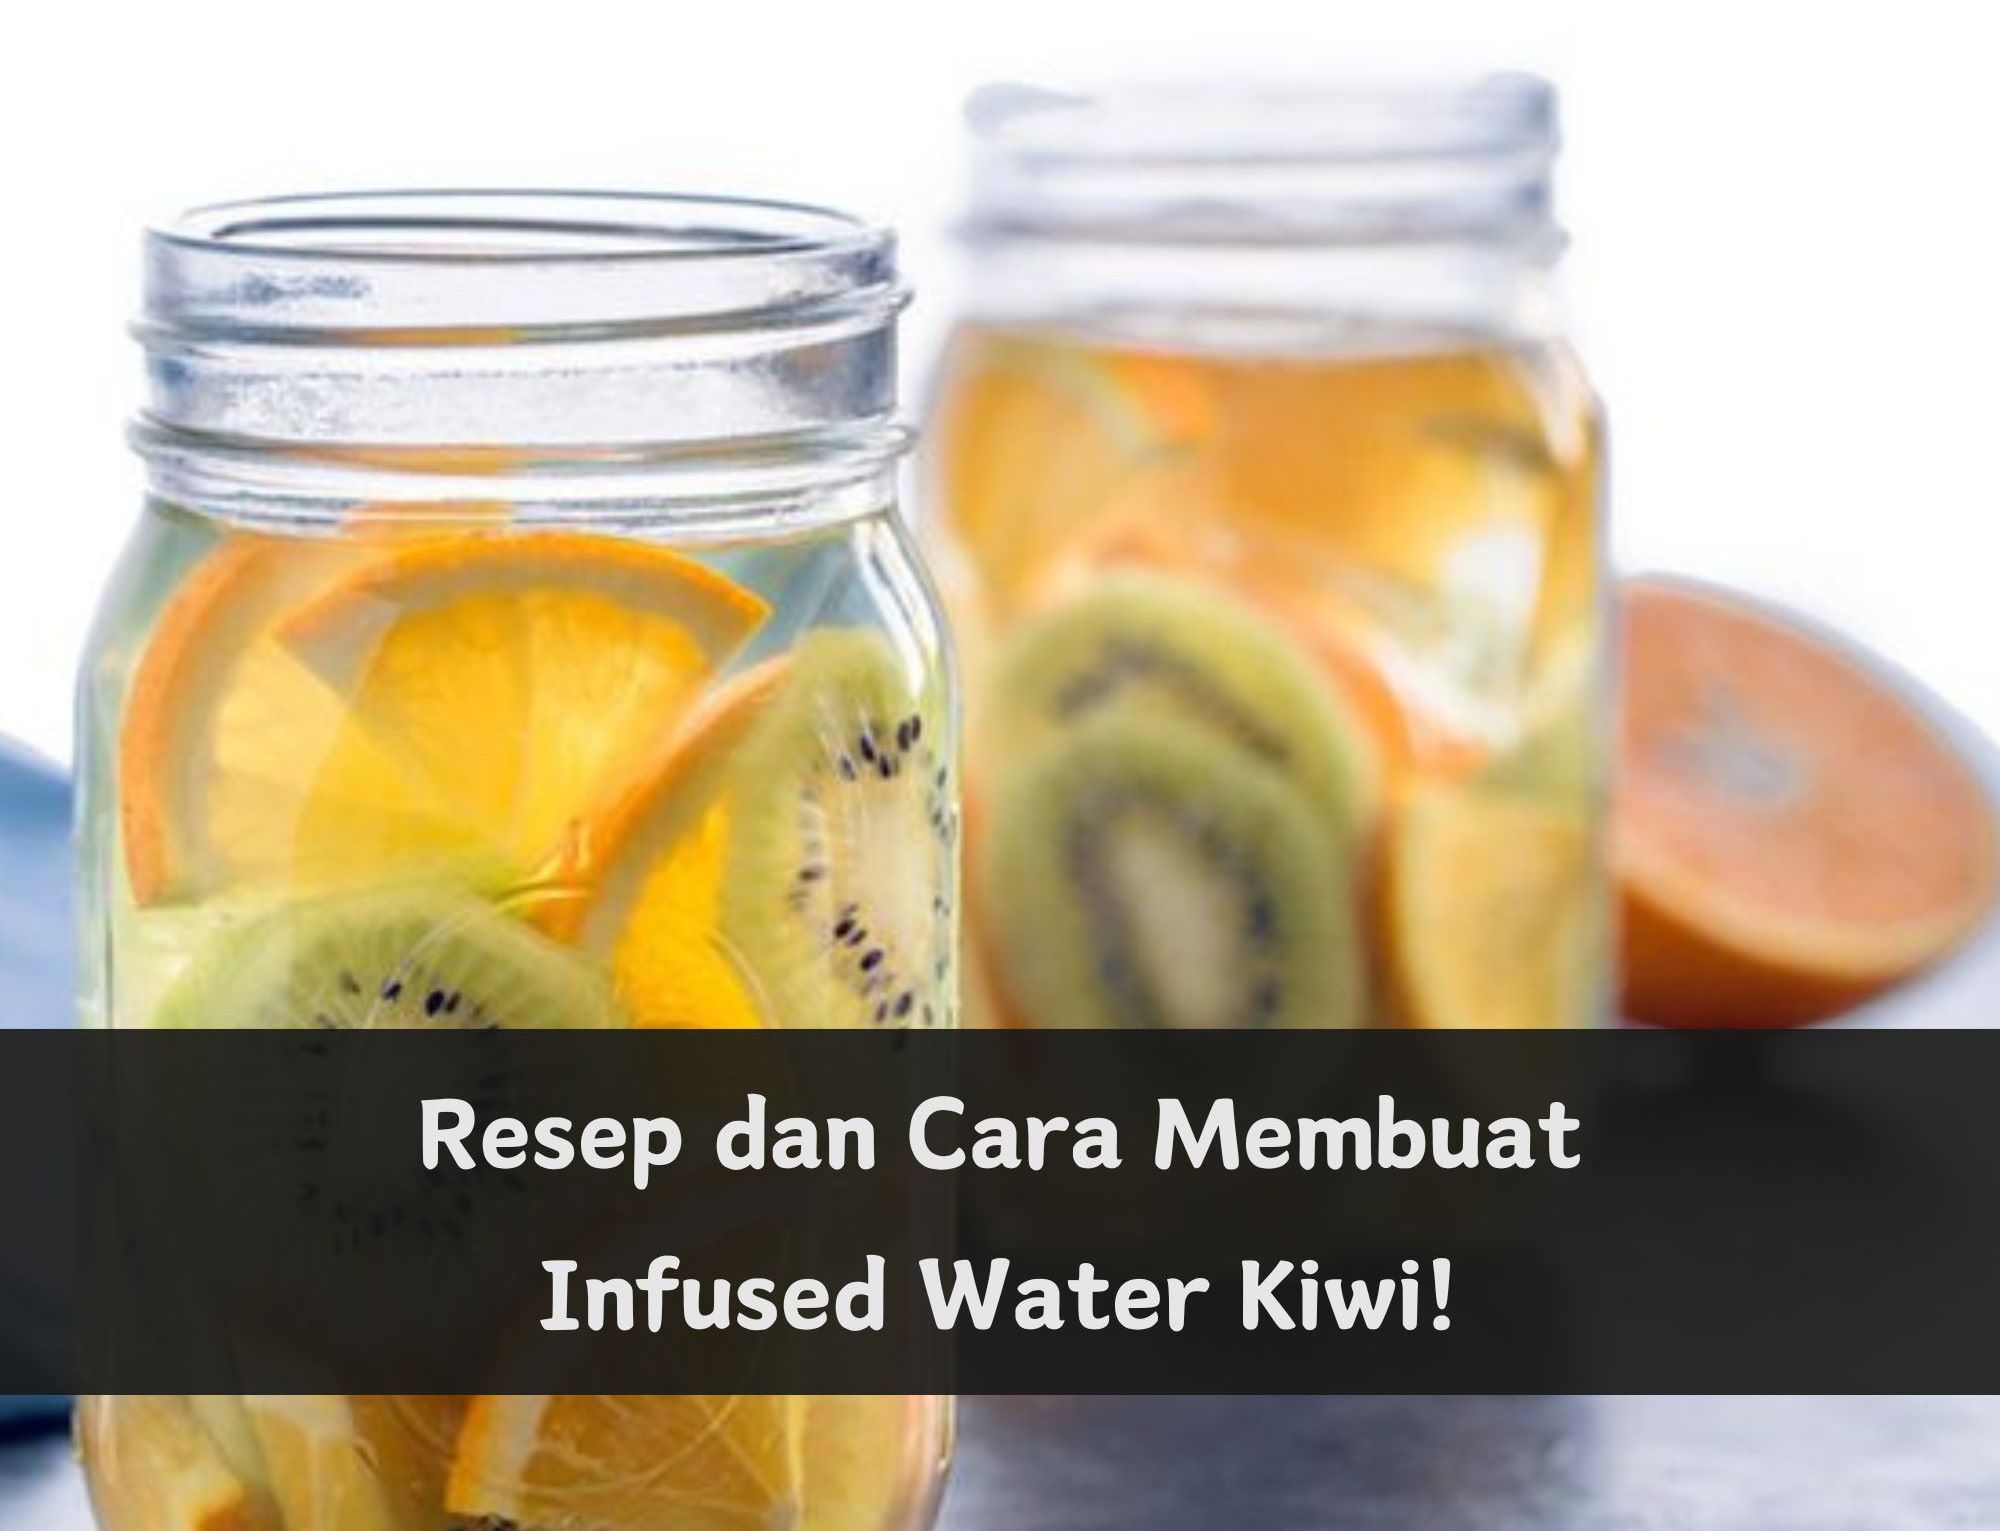 Cobain Resep Infused Water Kiwi Ini! Minuman Segar dan Sehat Mudah Dibuat di Rumah, Cukup Pakai Bahan Berikut